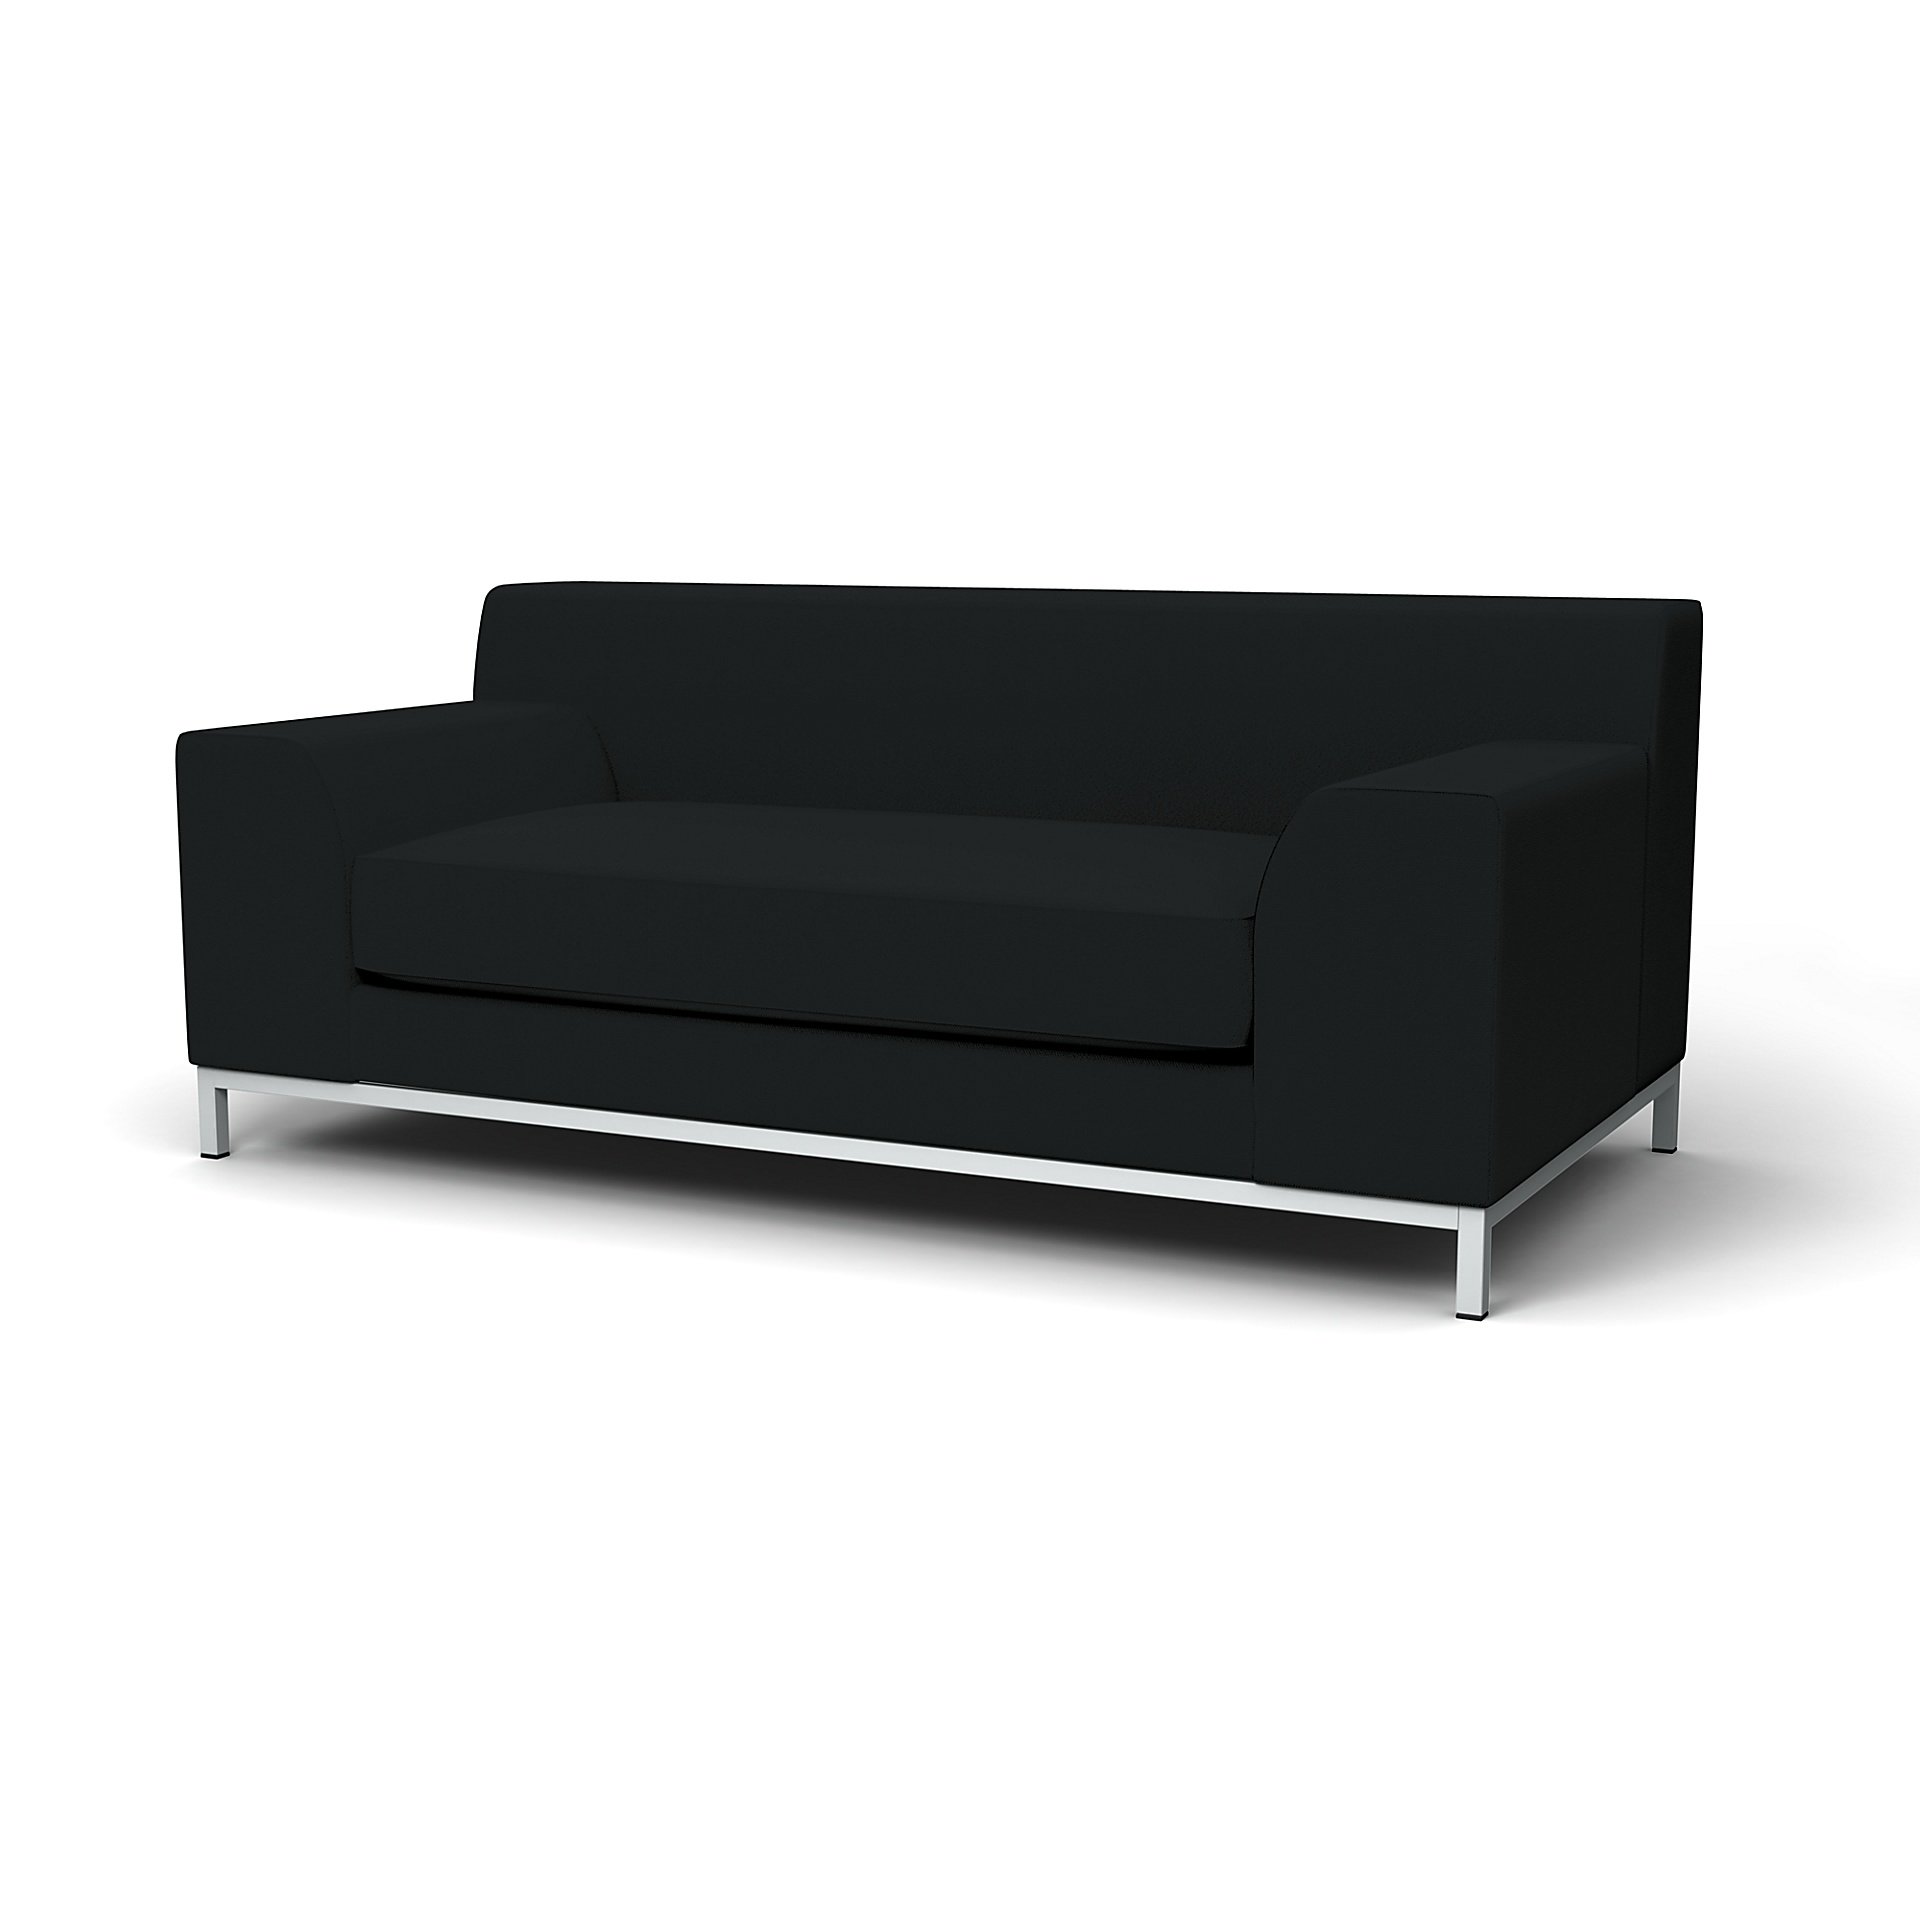 IKEA - Kramfors 2 Seater Sofa Cover, Jet Black, Cotton - Bemz